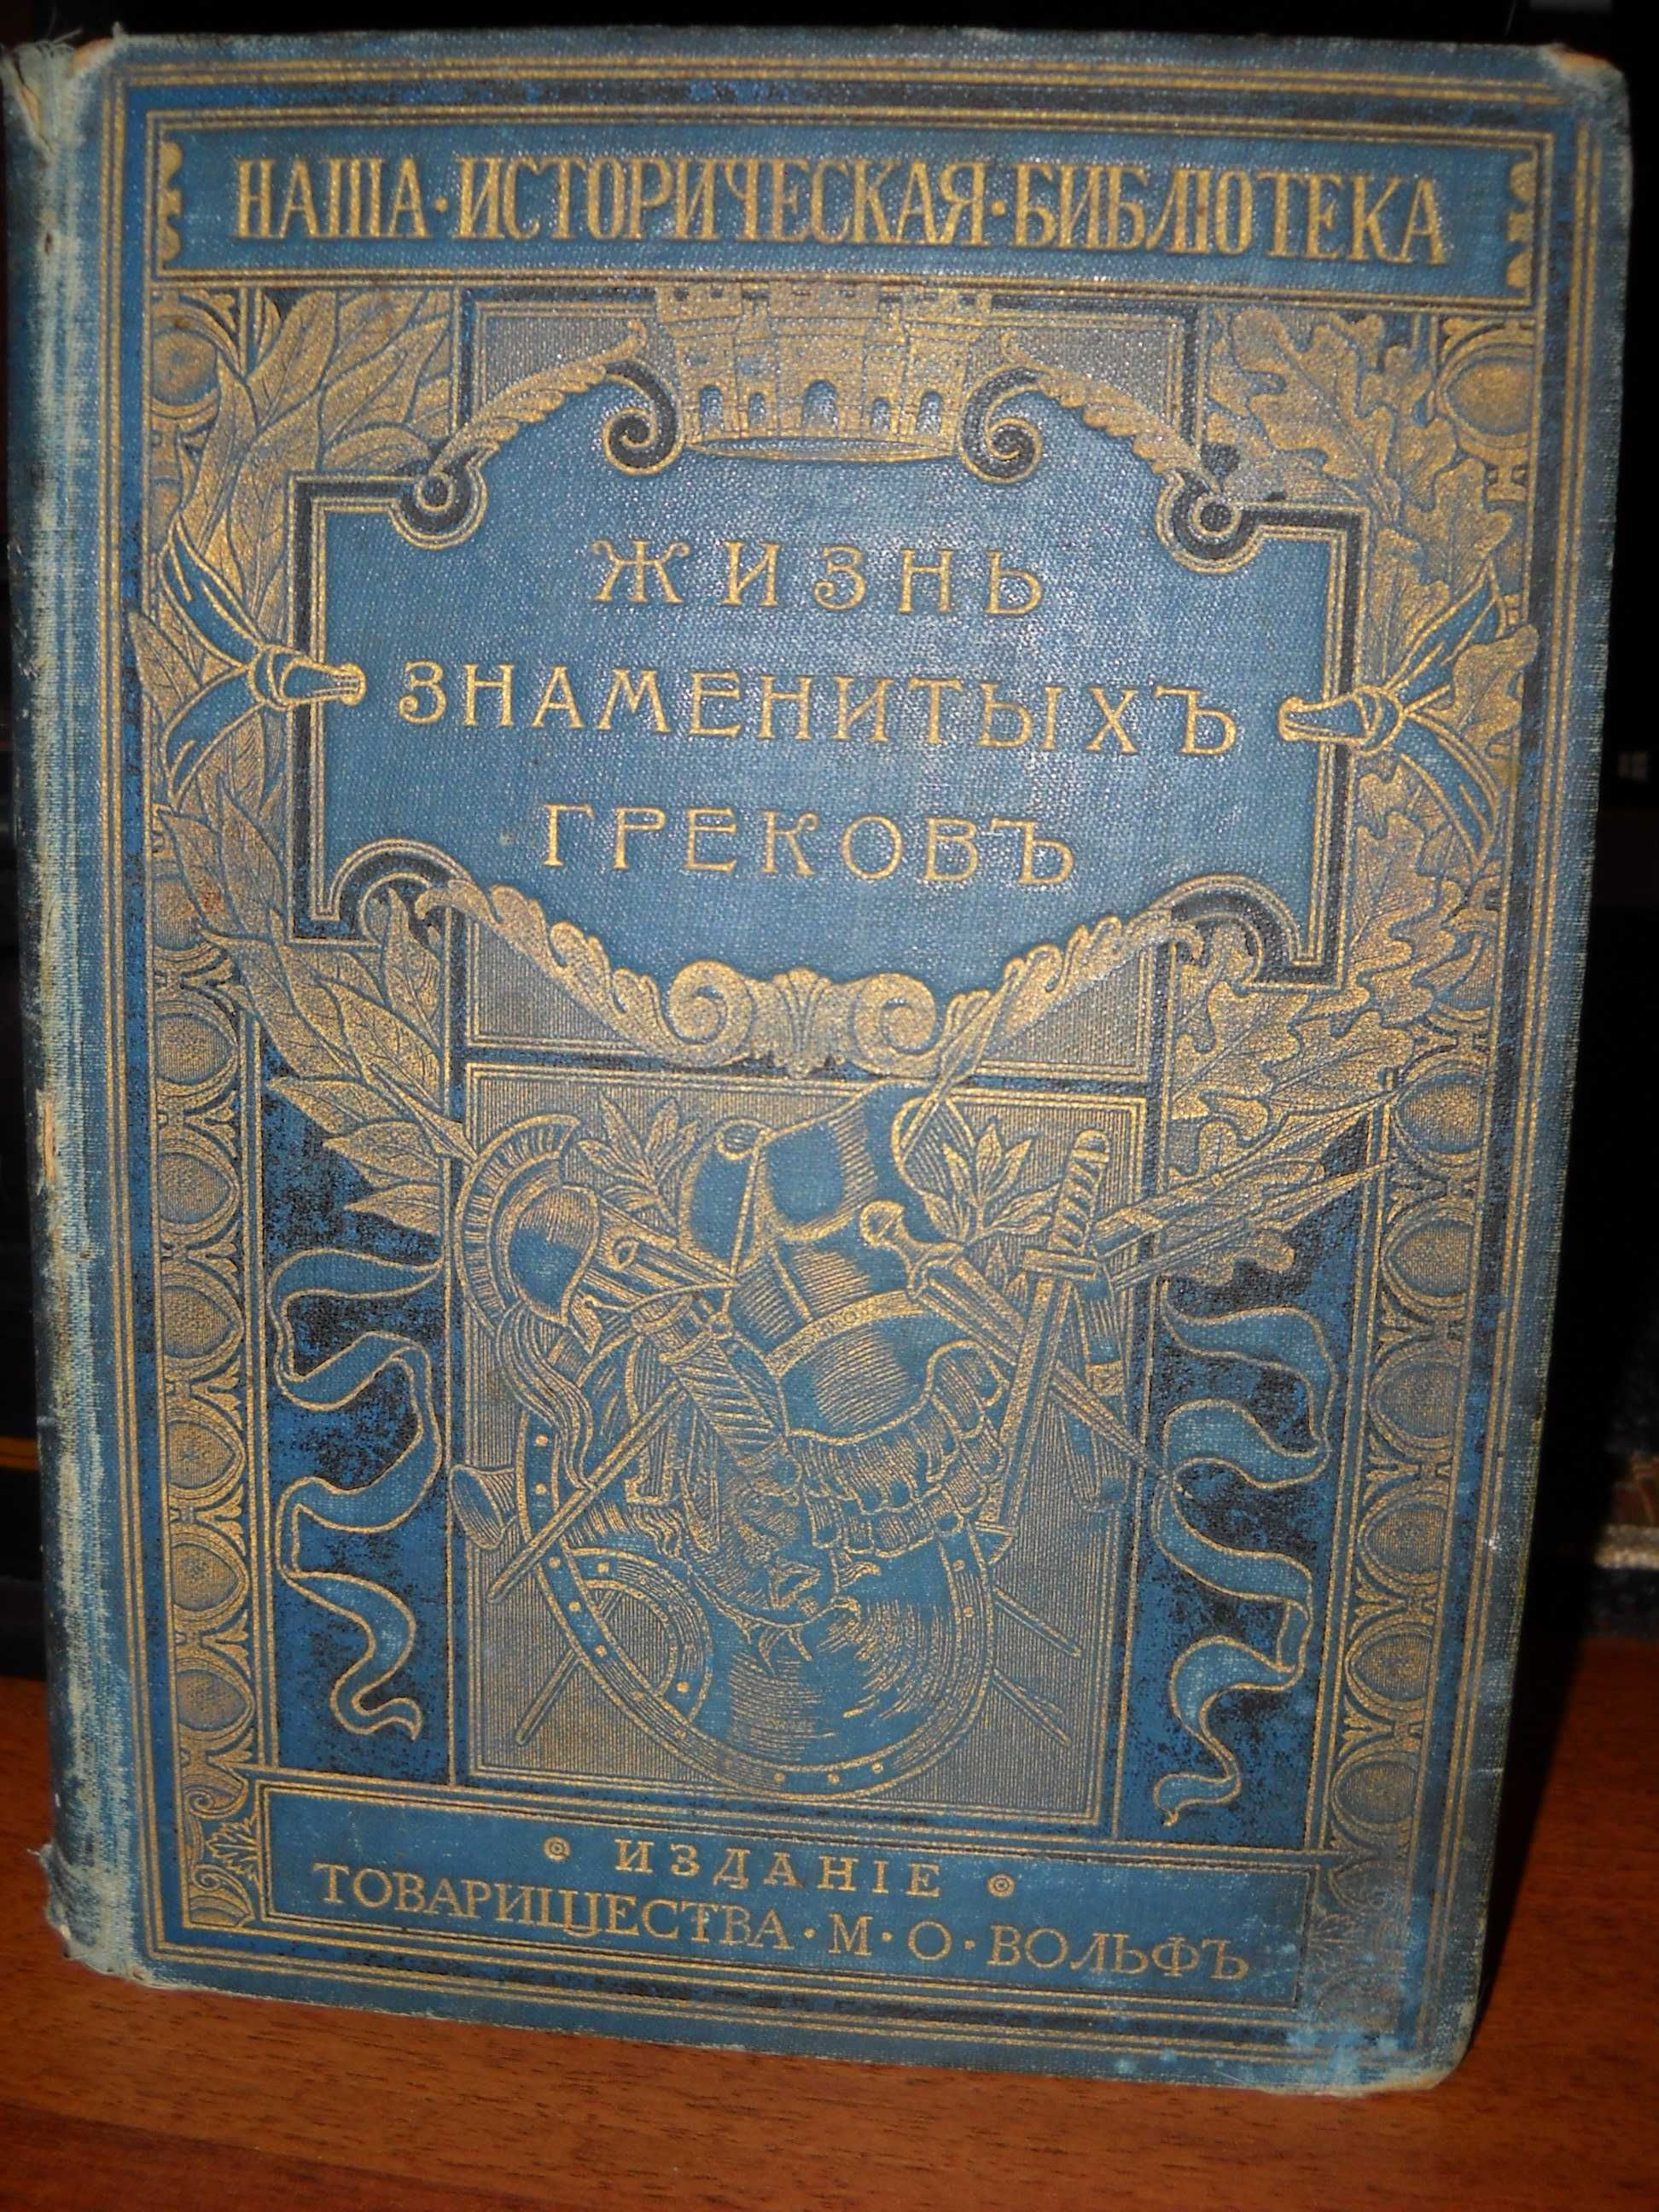 Фелье, А. Жизнь знаменитых греков 1904